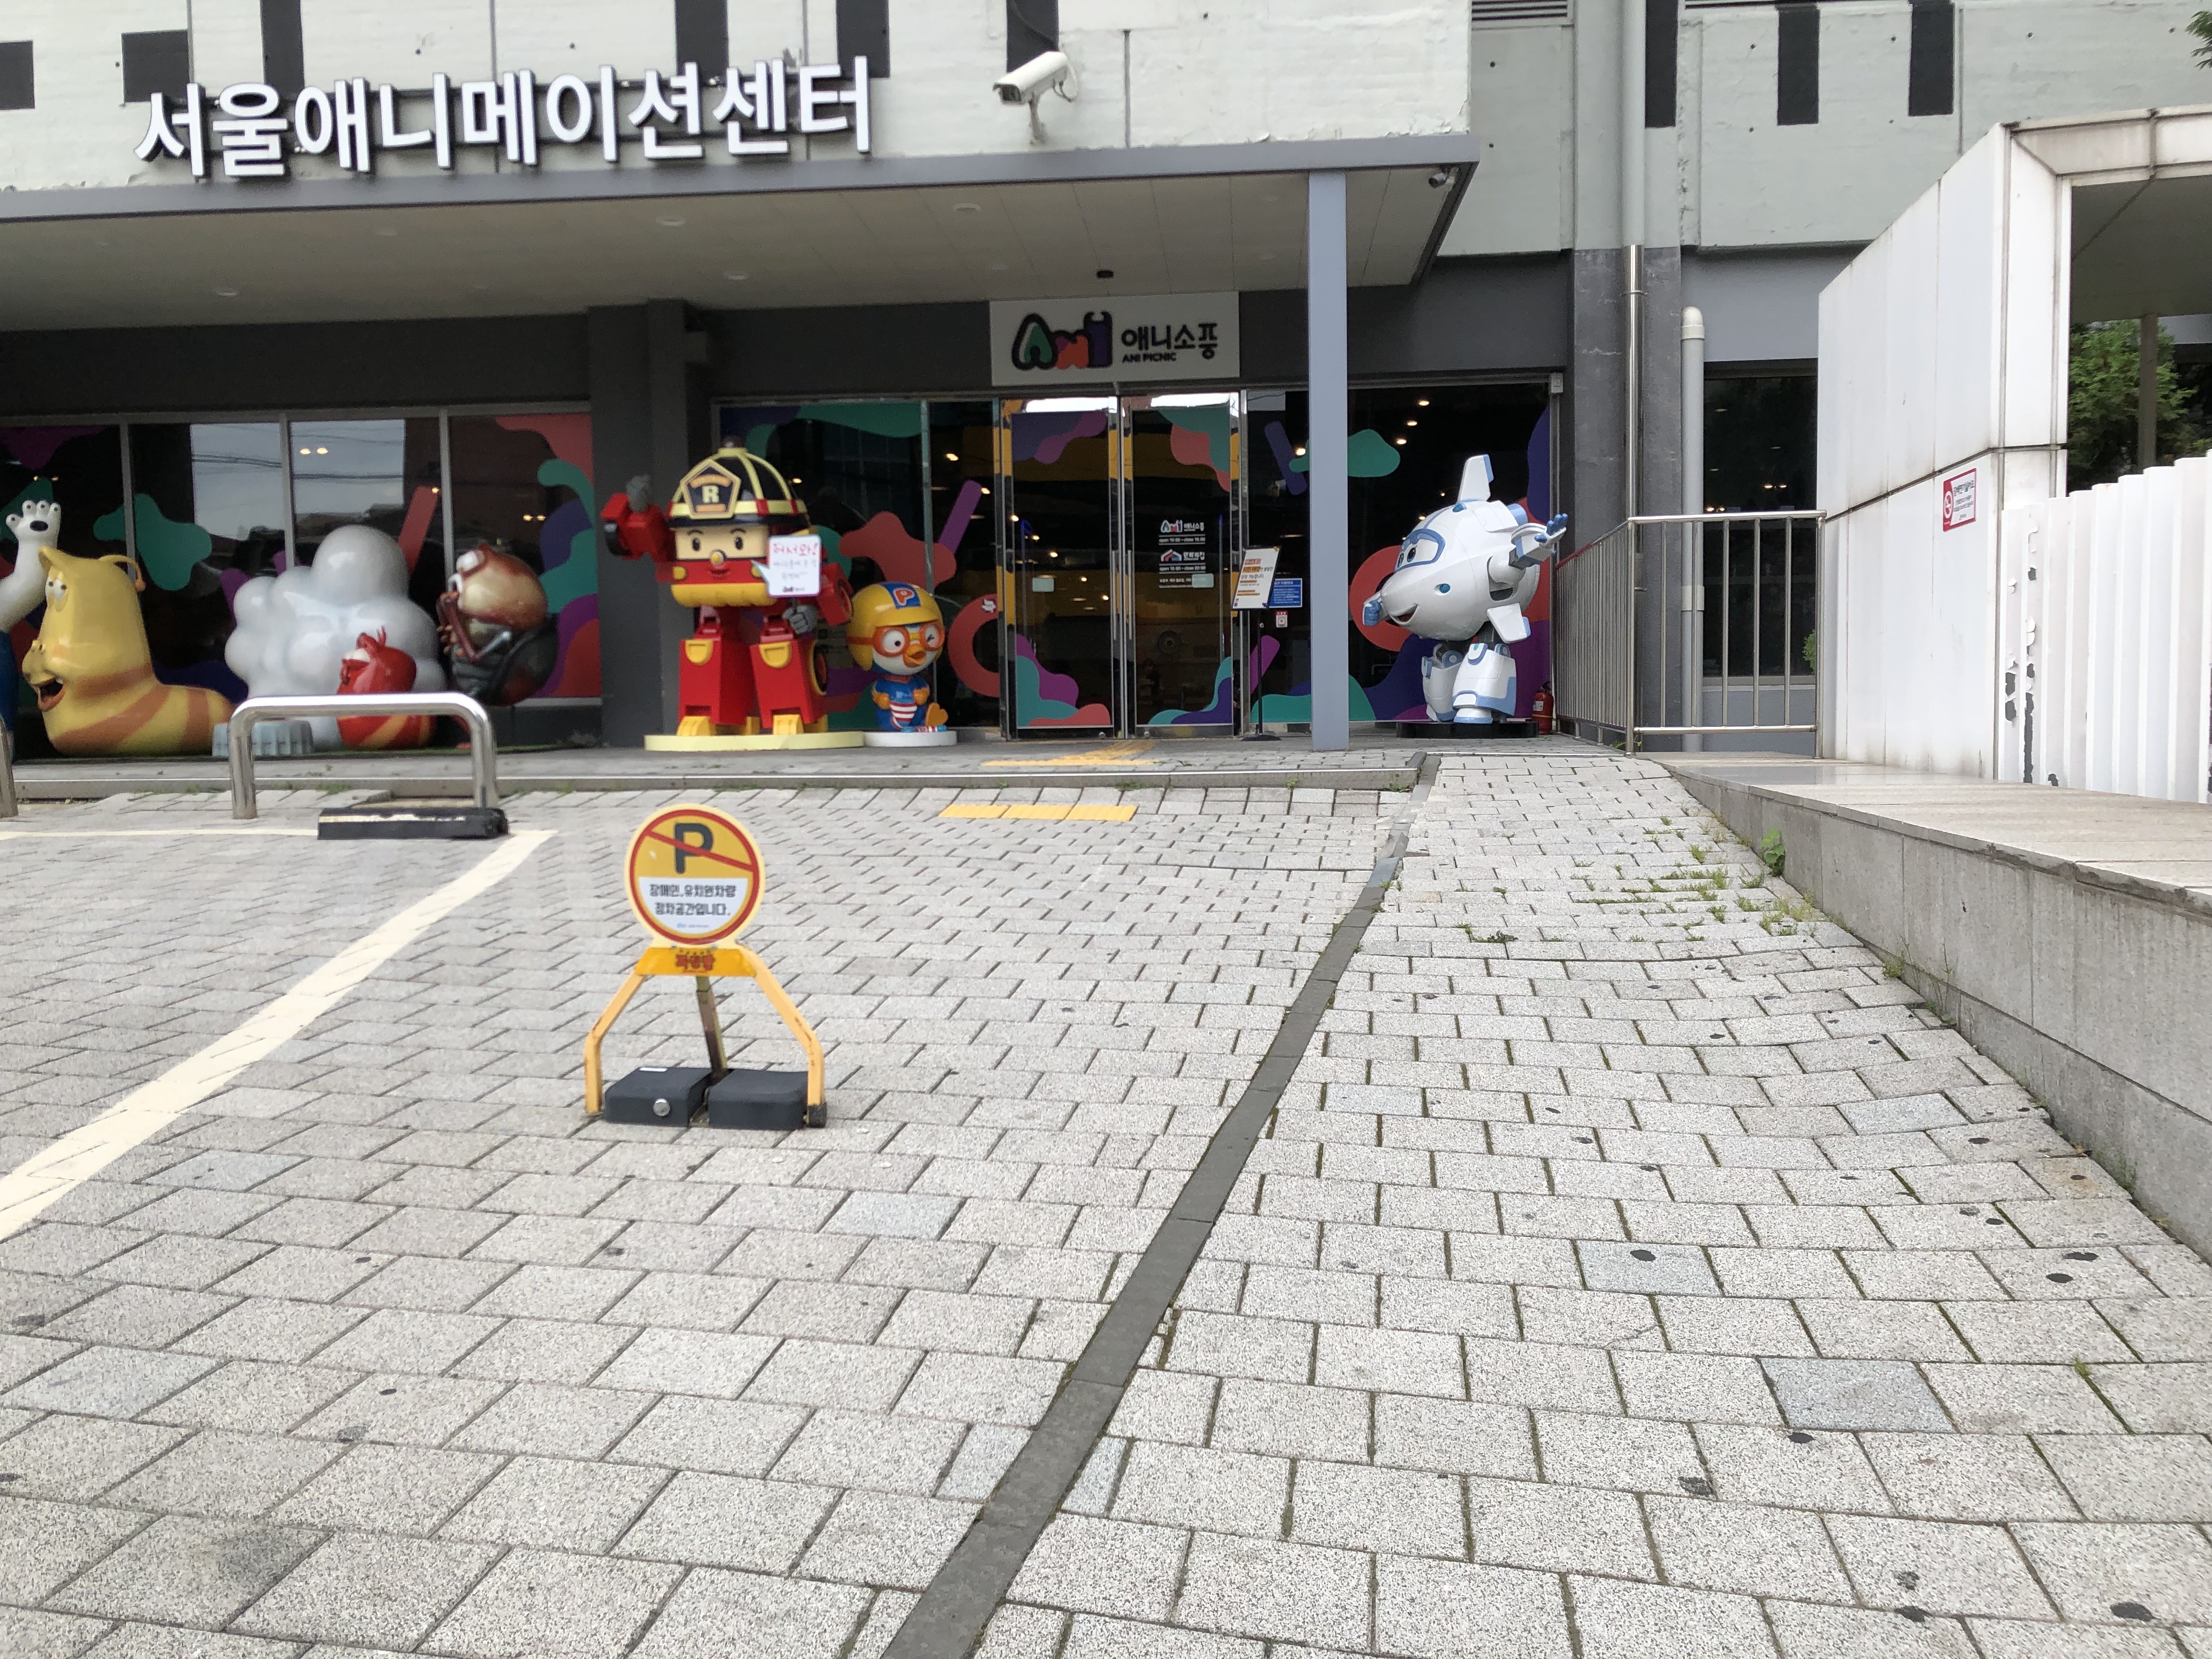 접근로/주출입구0 : 넓고 평탄한 서울애니메이션센터 진입로 전경